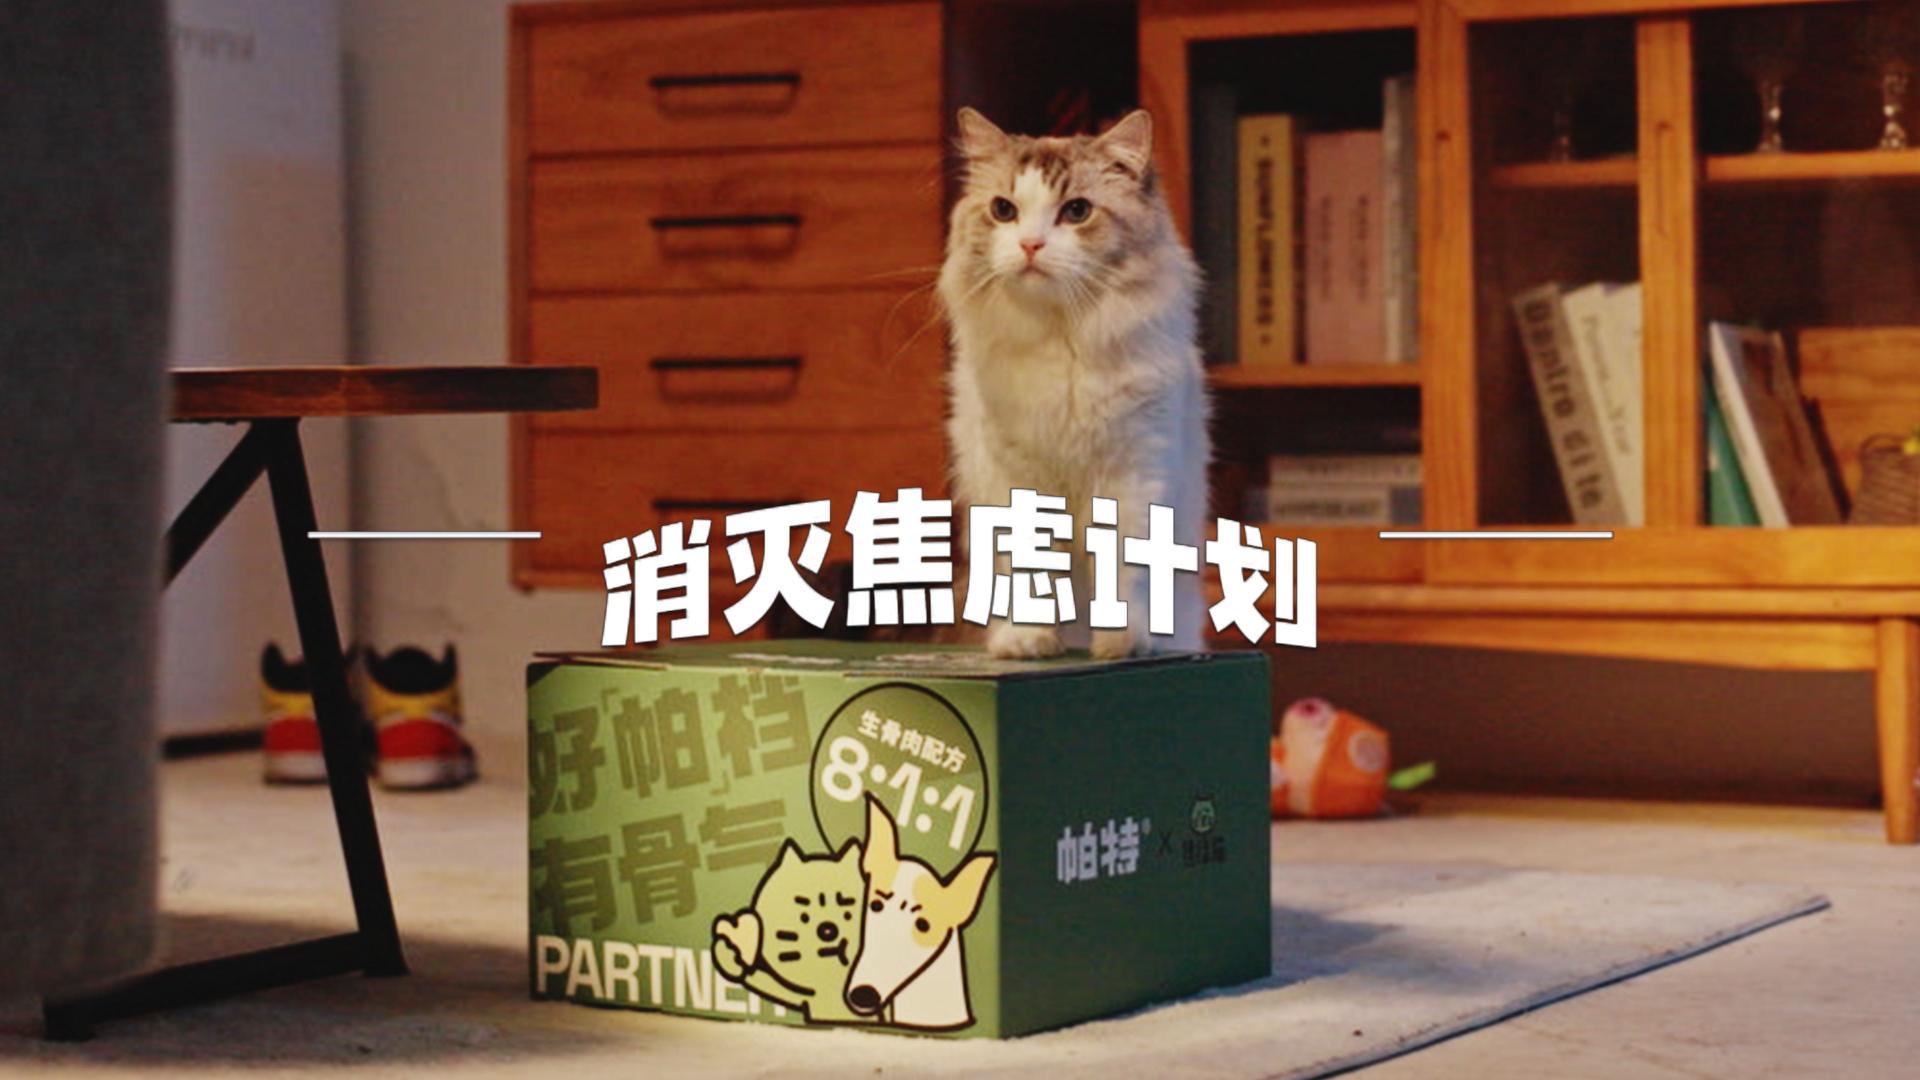 帕特 x 焦虑猫｜811品牌日联名《消灭焦虑计划》